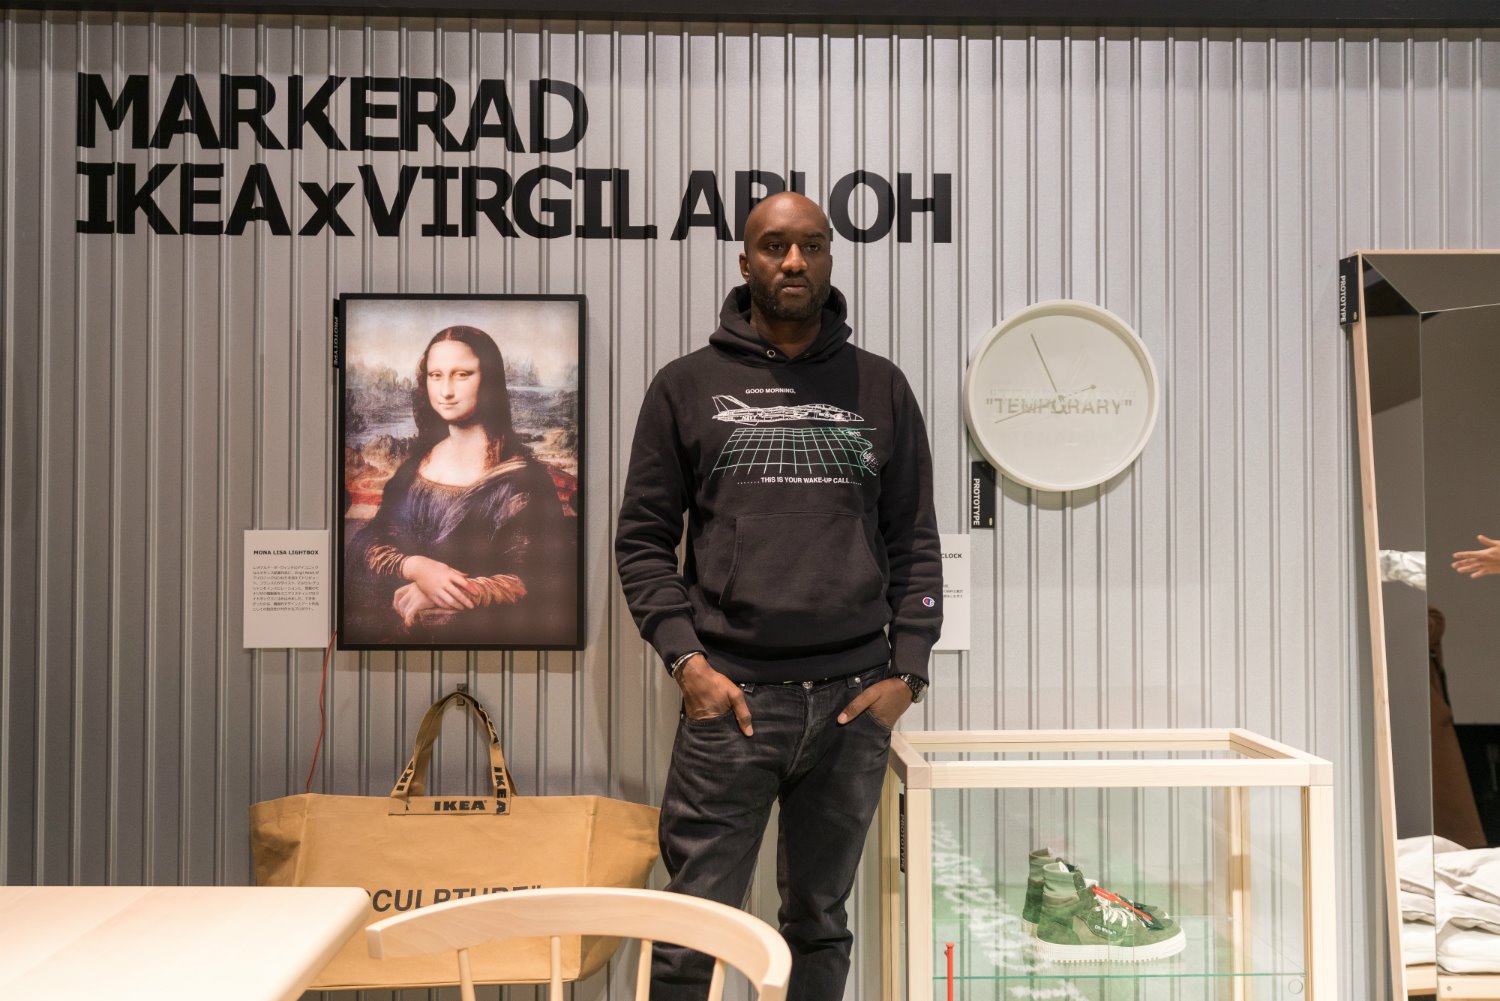 Treinta flota Exactitud Virgil Abloh crea la colección millennial Markerad para Ikea